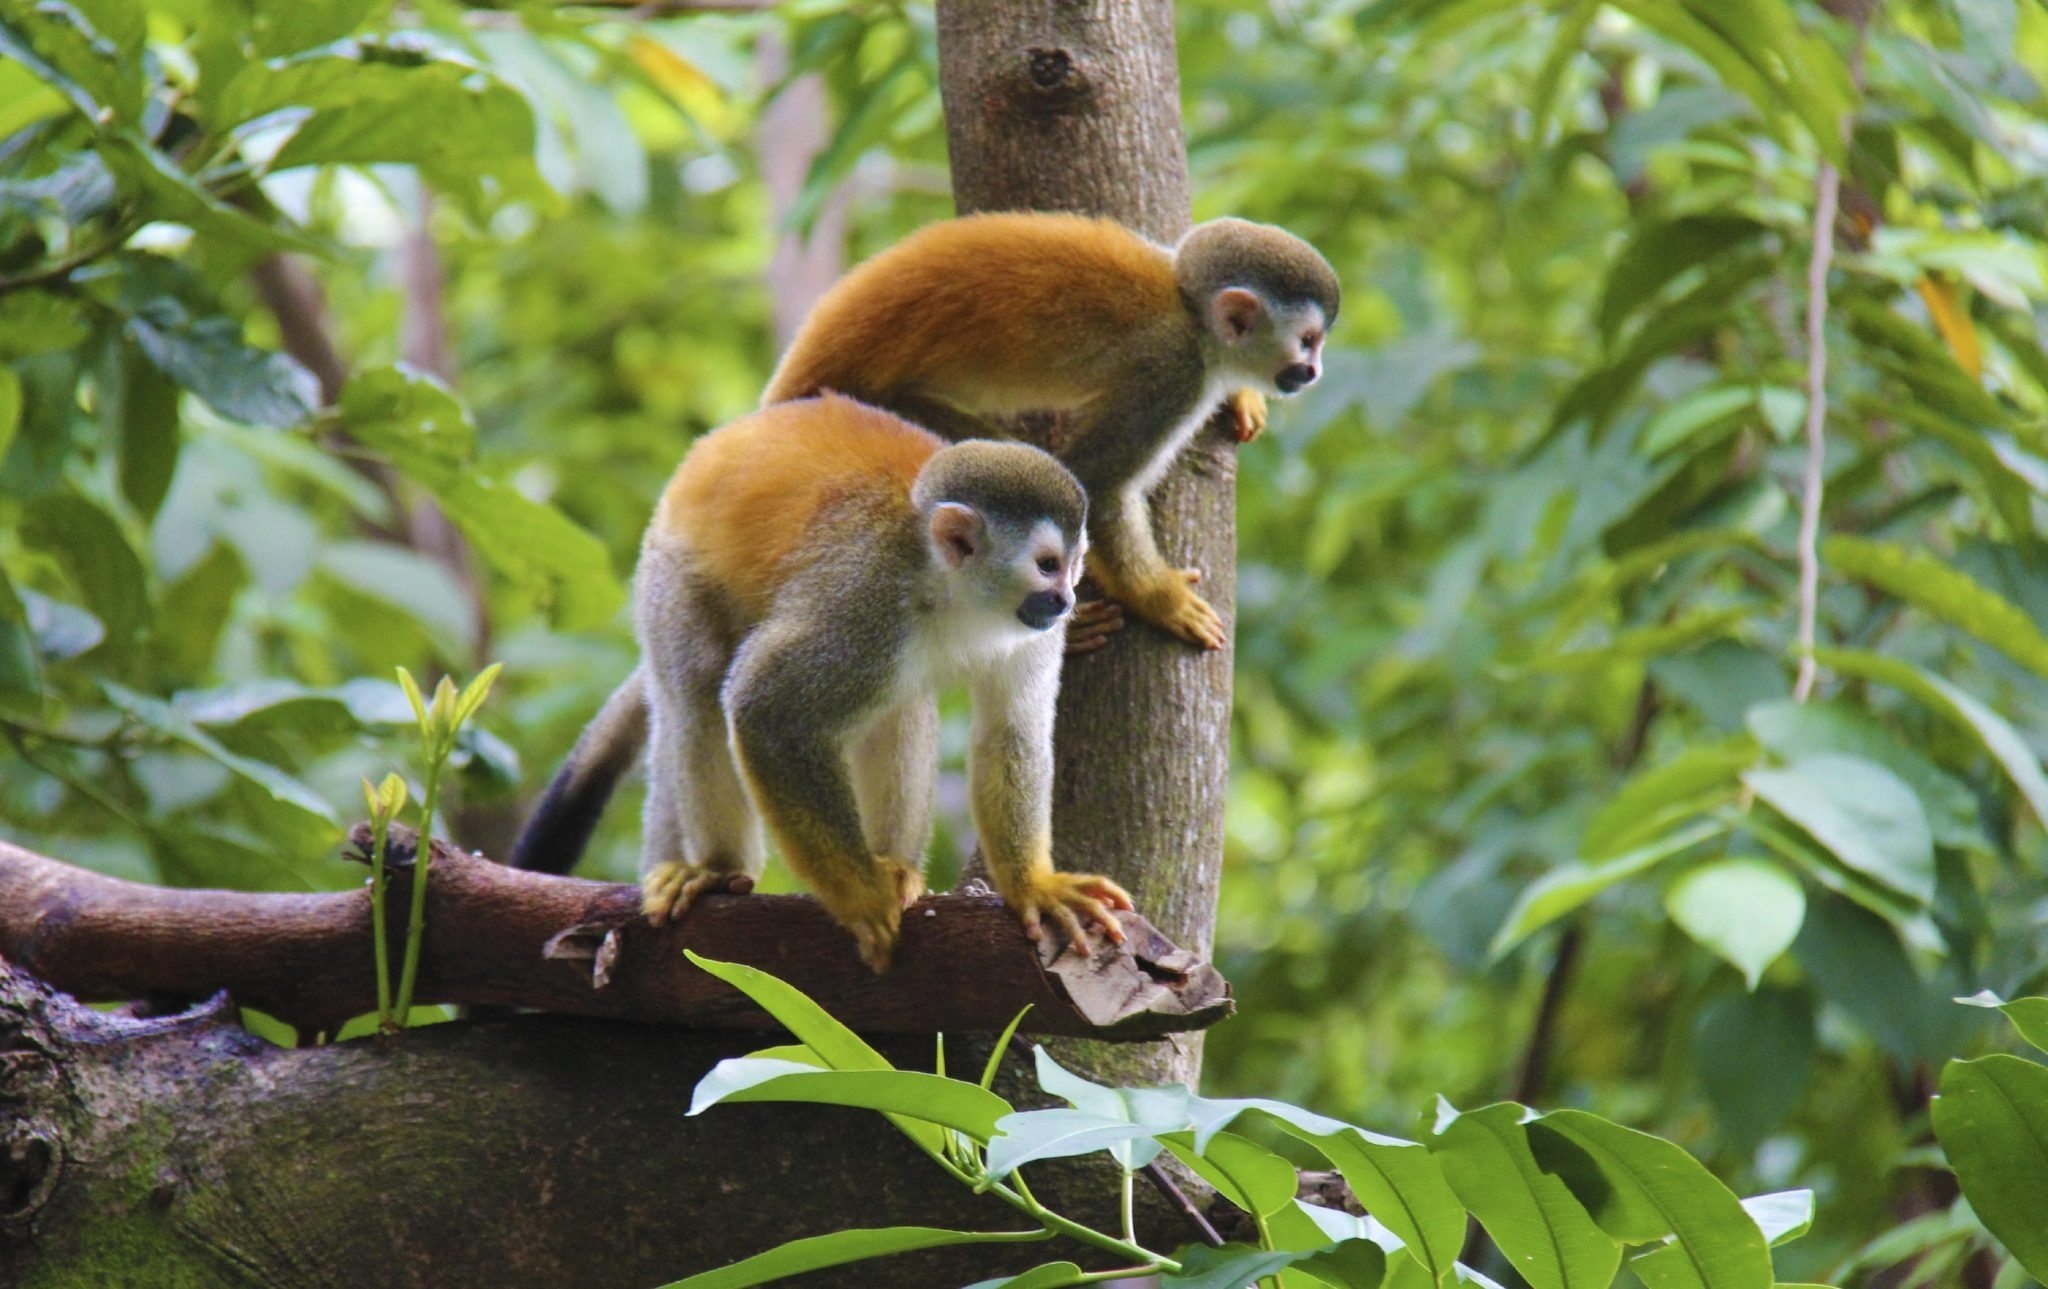 В какой природной зоне обитают обезьяны. Обезьяны экваториальных лесов Южной Америки. Обезьяны — мартышки сельвы Южной Америки. Животный мир влажных экваториальных лесов Южной Америки. Фауна экваториальных лесов Африки.